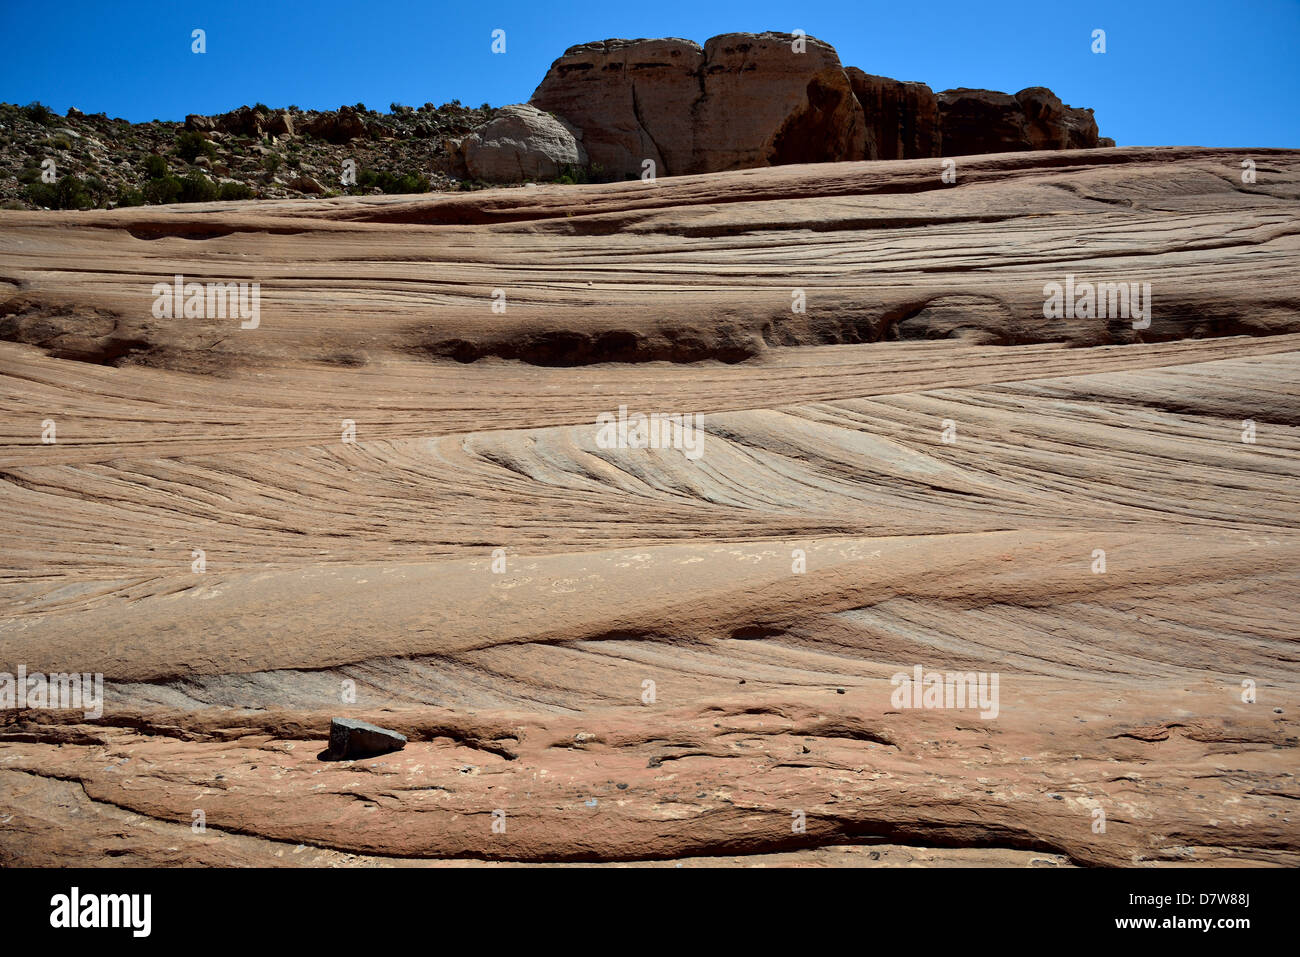 Kreuz-Betten im Äolischen Sandstein. Moab, Utah, USA. Stockfoto